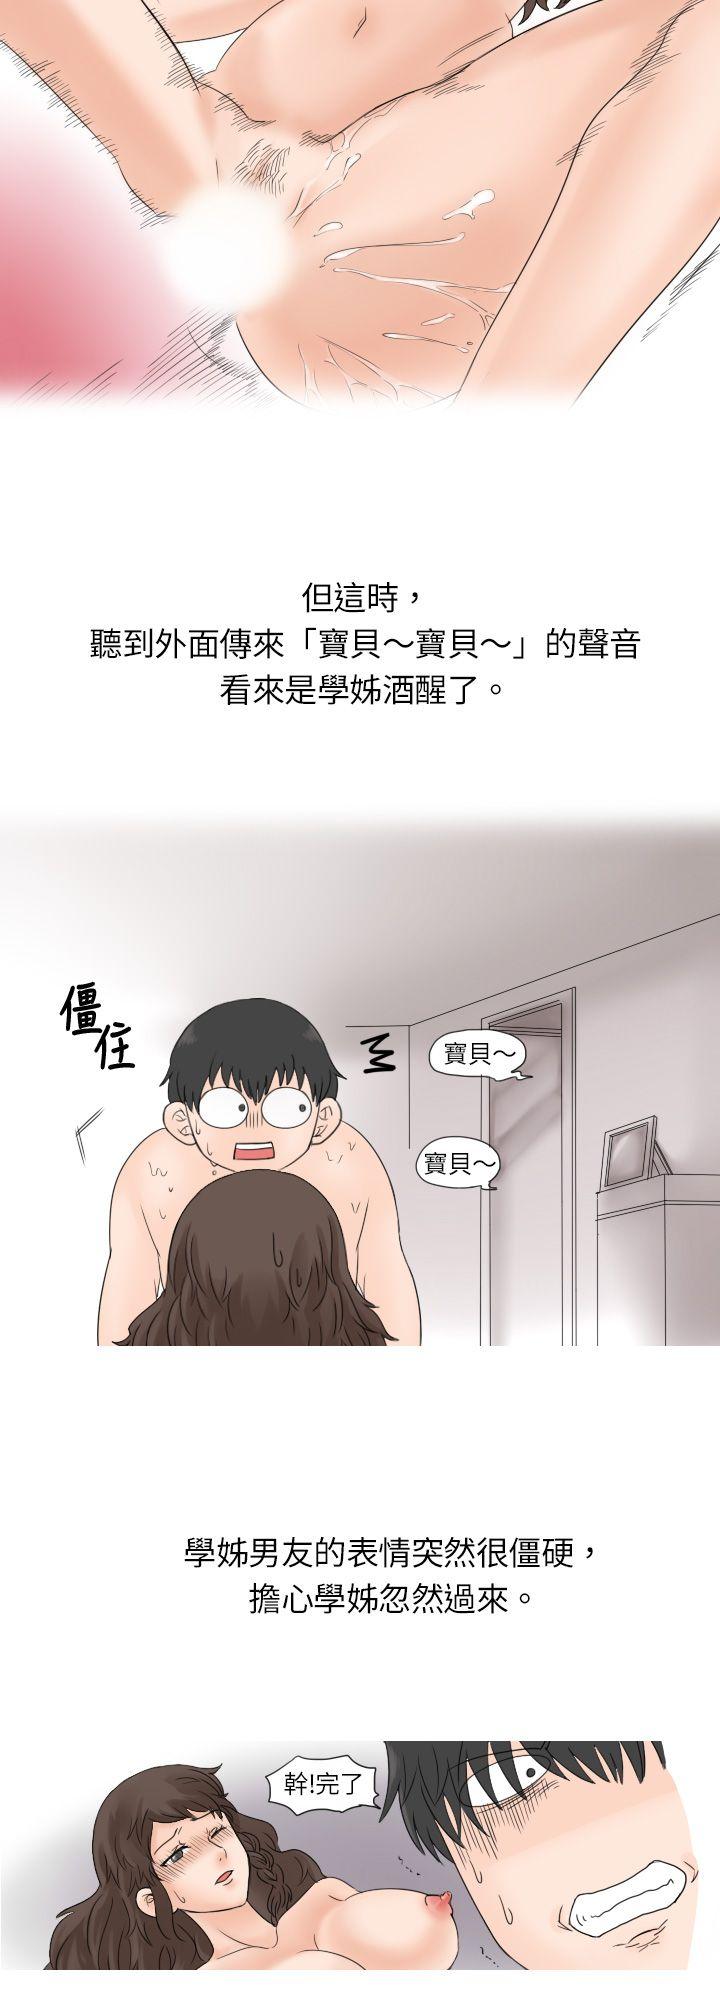 韩国污漫画 秘密Story 与学姊男友的糟糕事件(上) 6